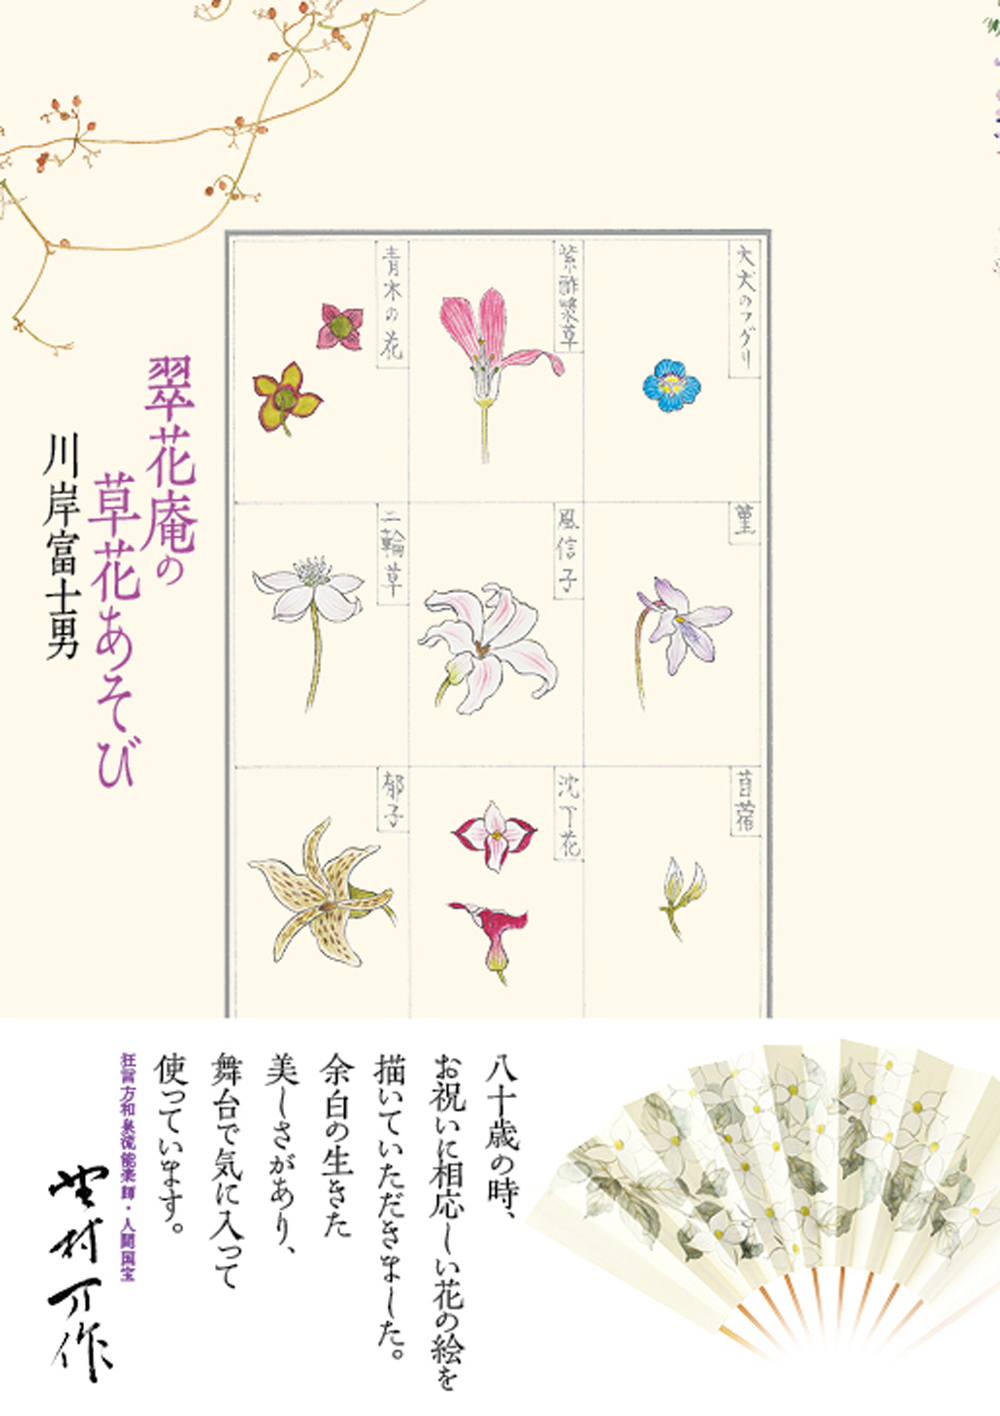 翠花庵 川岸富士男「椿と桜と四季の花」展｜青幻舎 SEIGENSHA Art